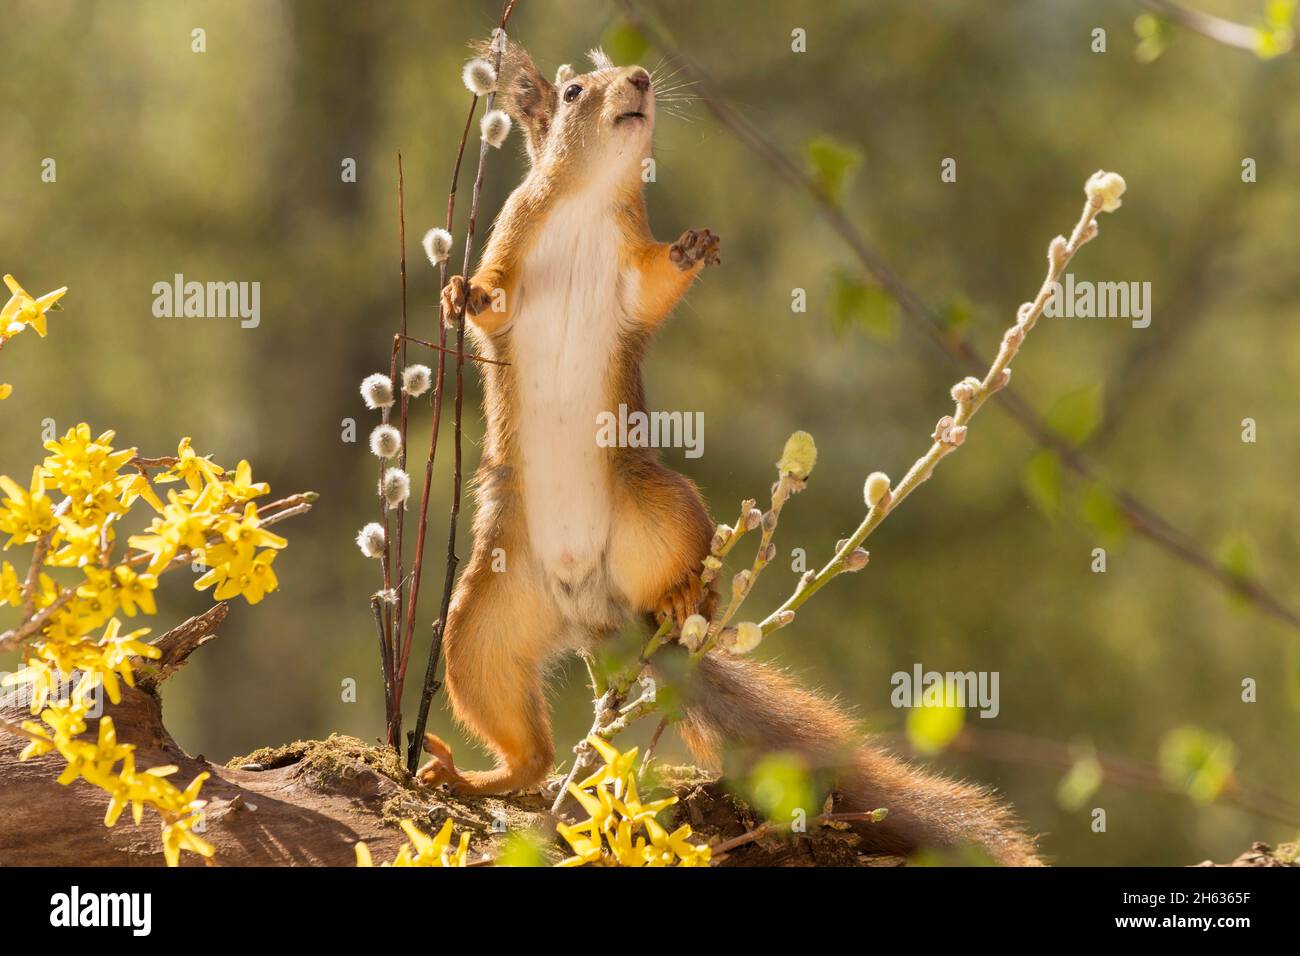 Nahaufnahme eines roten Eichhörnchens, das hinter Ästen steht und gelbe Blüten im Sonnenlicht nach oben streckt Stockfoto